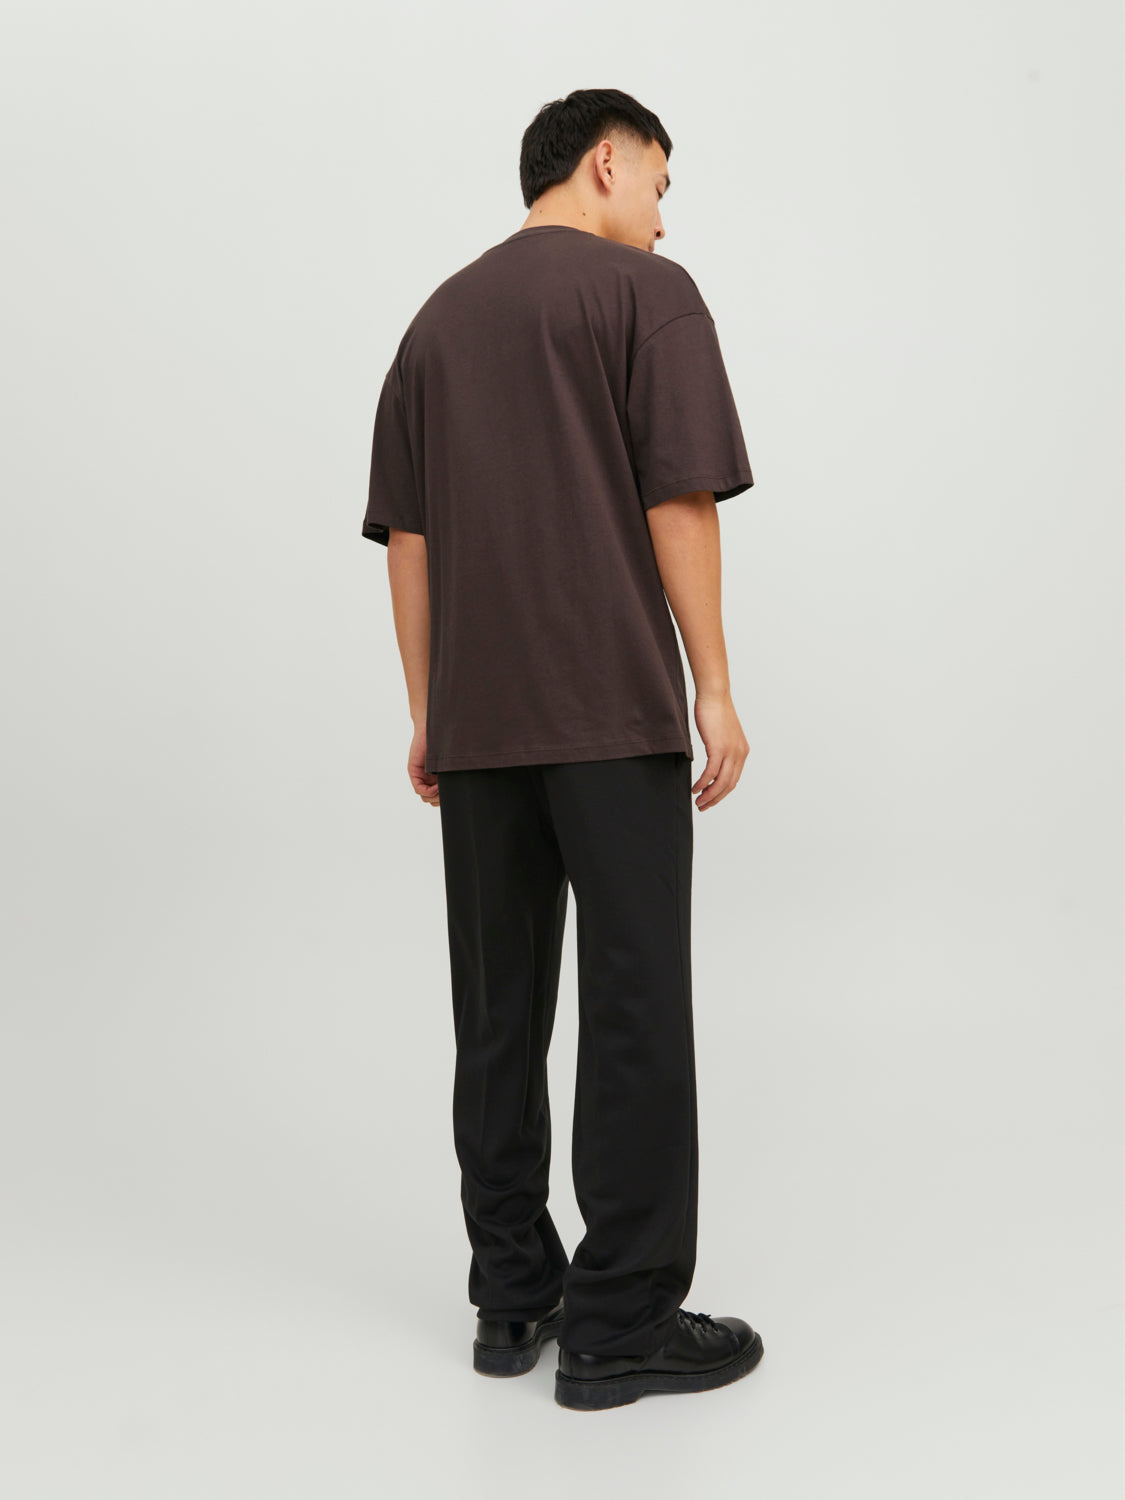 Camiseta de manga corta de algodón JJETIMO - Marrón